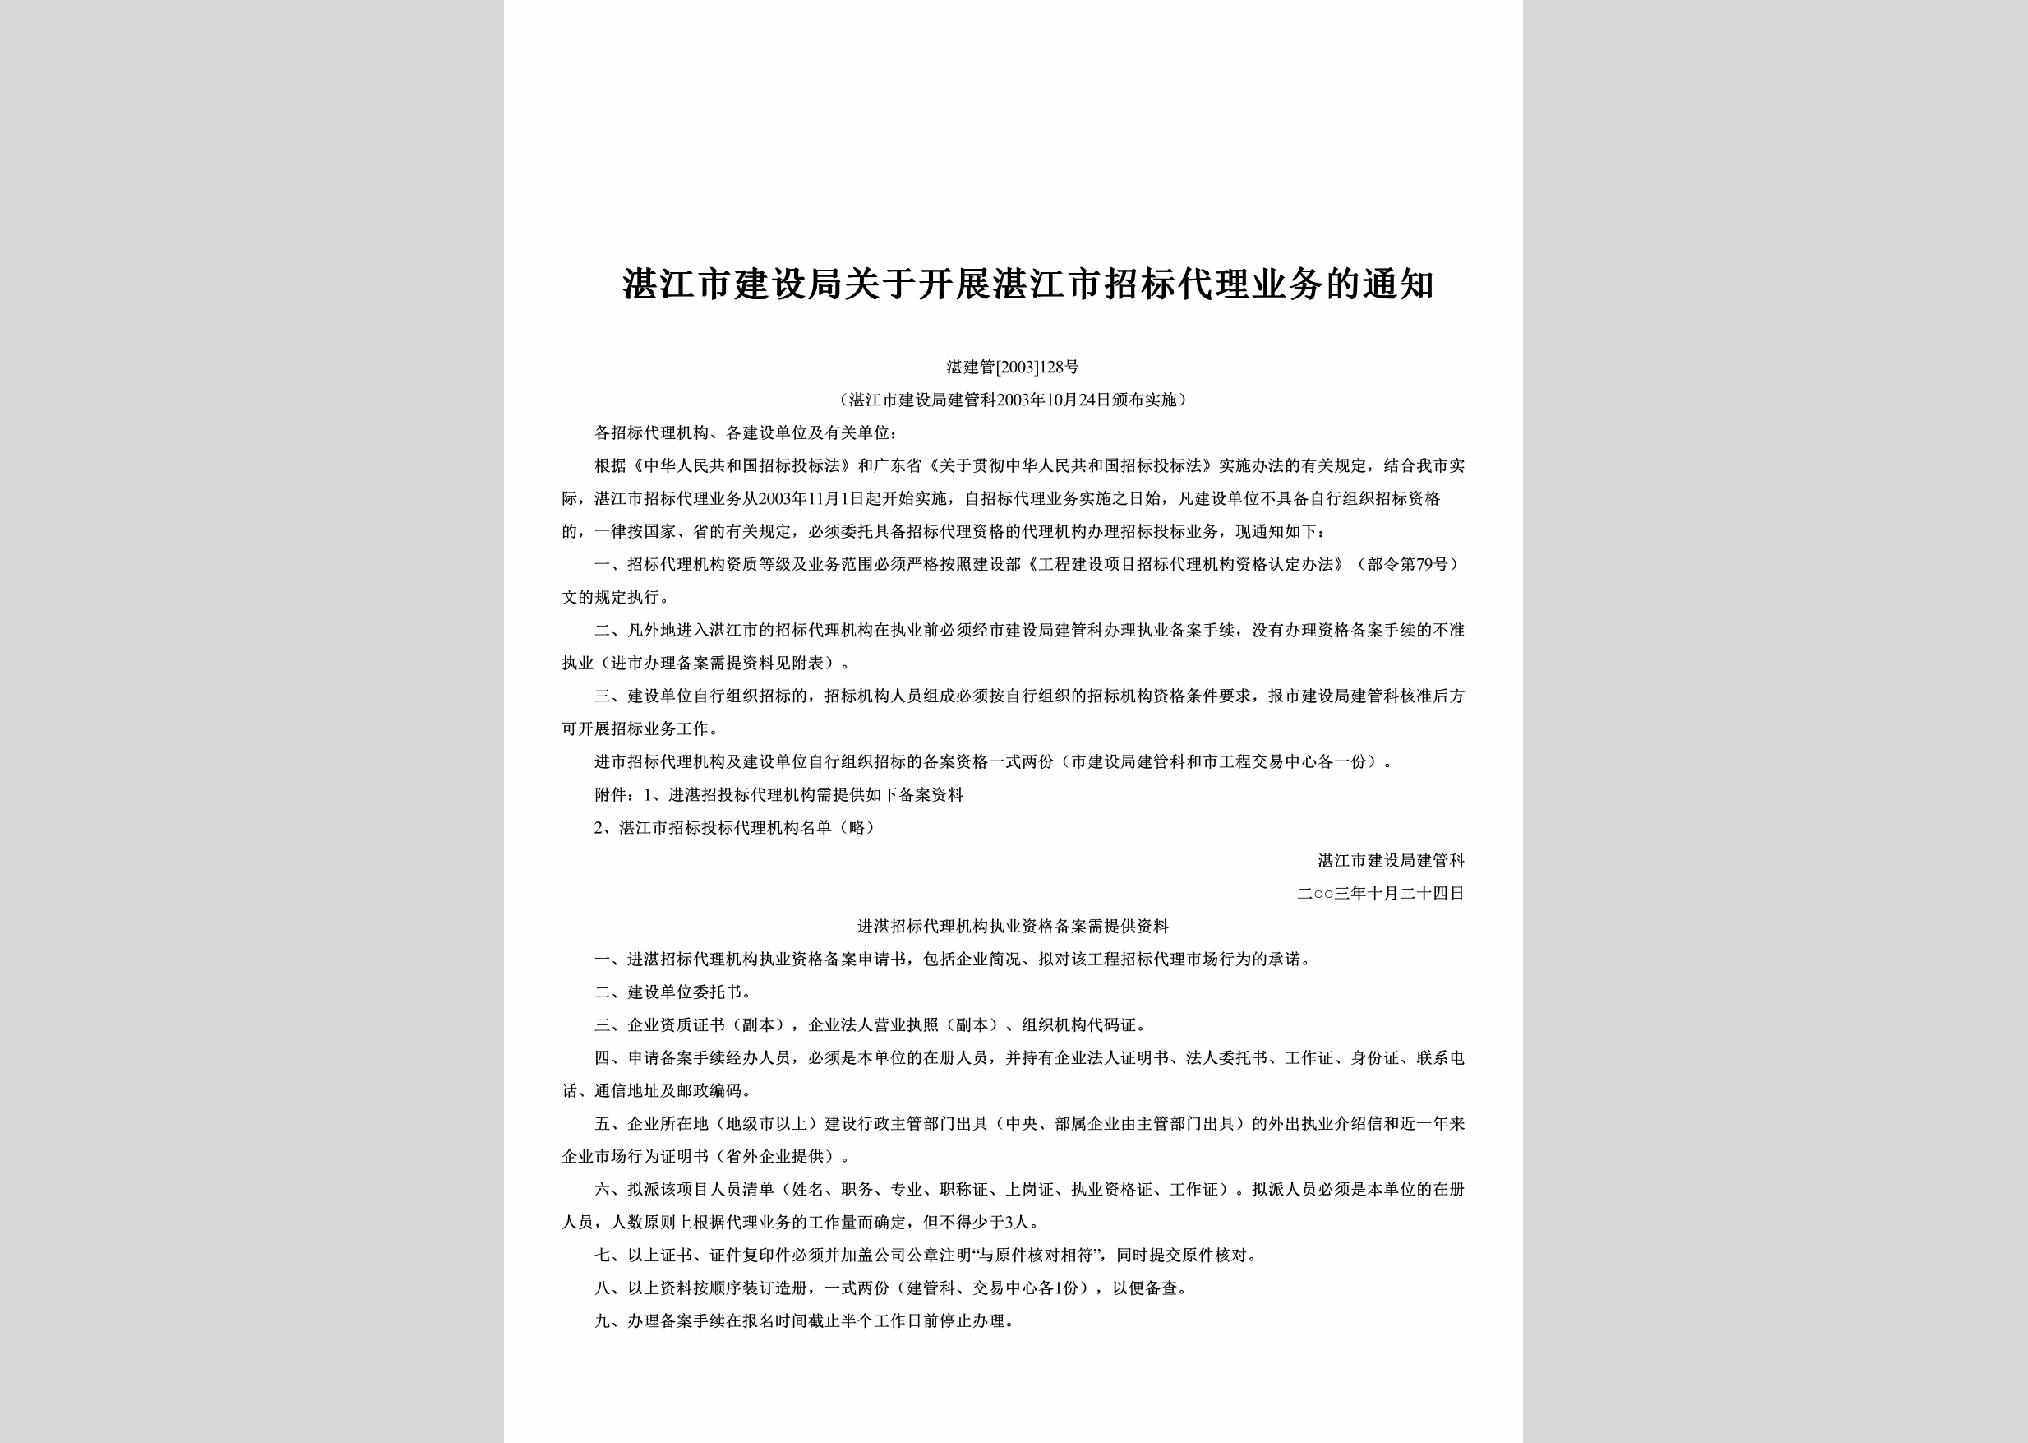 湛建管[2003]128号：关于开展湛江市招标代理业务的通知